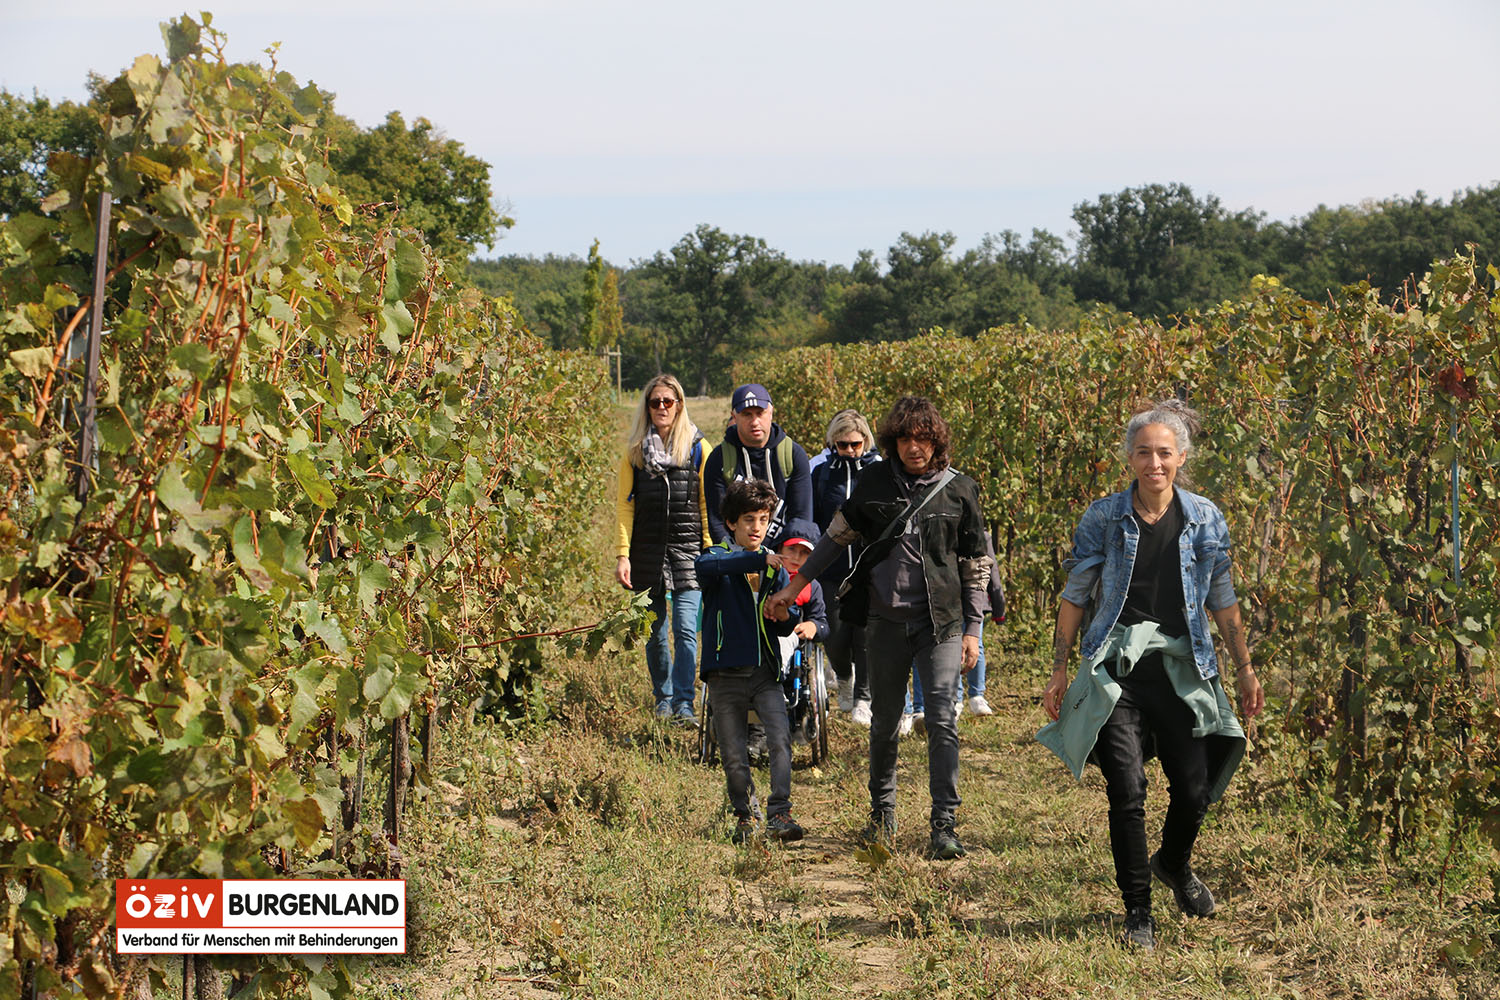 Die Gruppe auf dem Weg durch den Weingarten